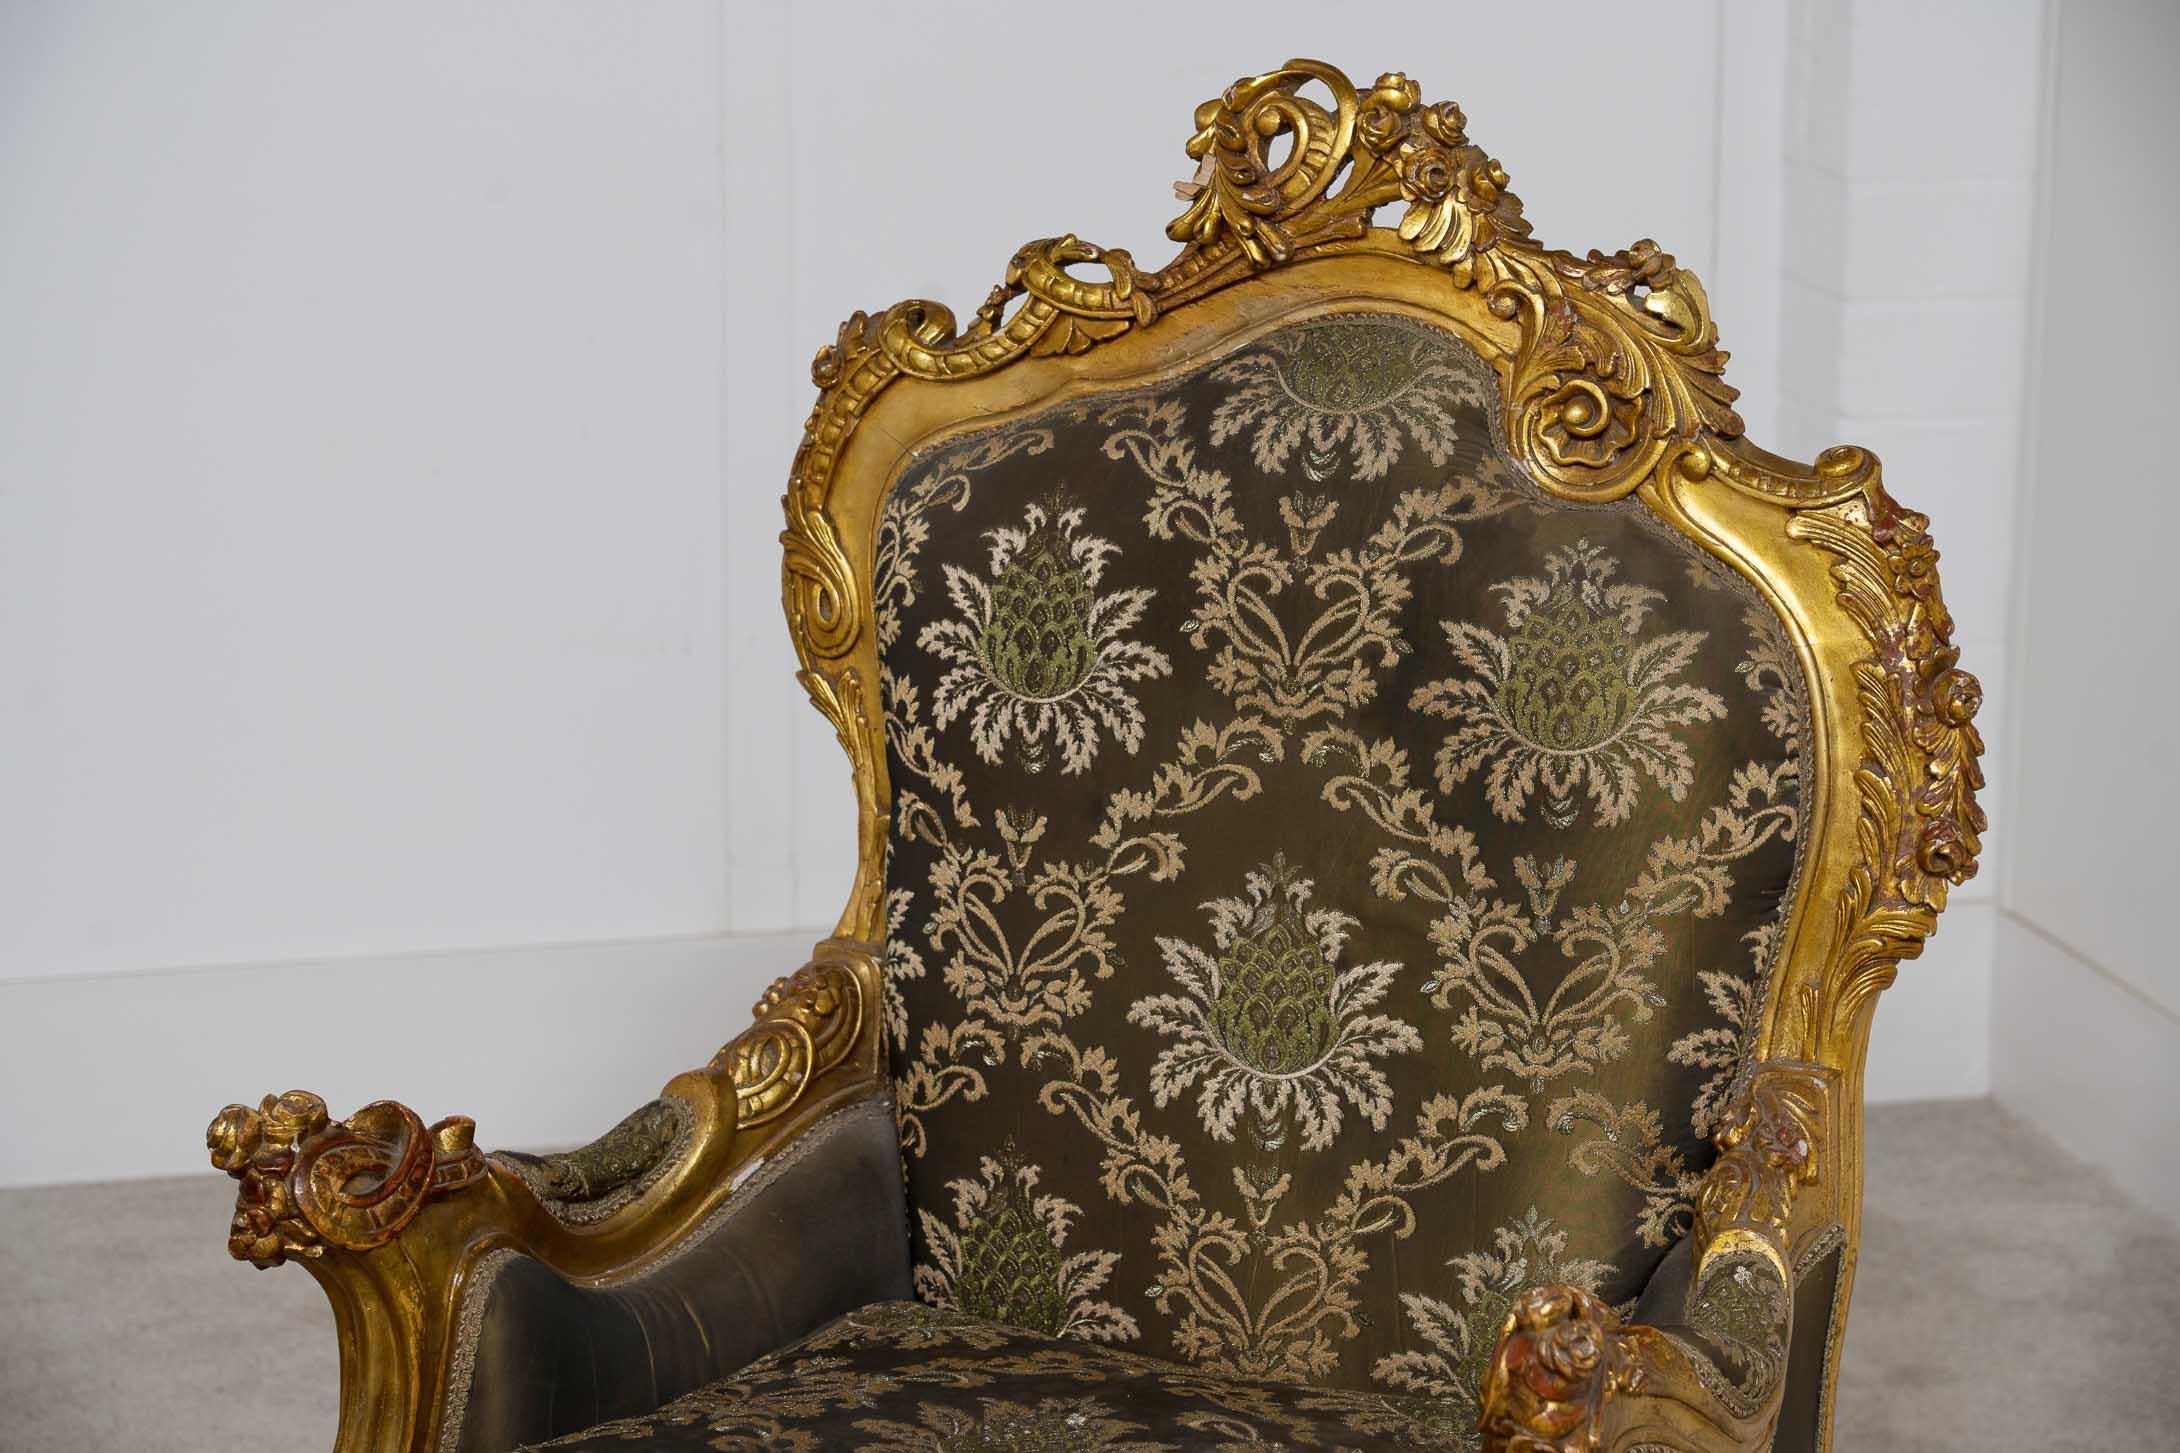 Paire classique de fauteuils français anciens de style Louis XVI Fabriqués à la main en vermeil avec des accoudoirs rembourrés
Fraîchement retapissé avec un motif floral tissé
Acheté à un marchand de la rue de Rossiers lors des marchés d'antiquités